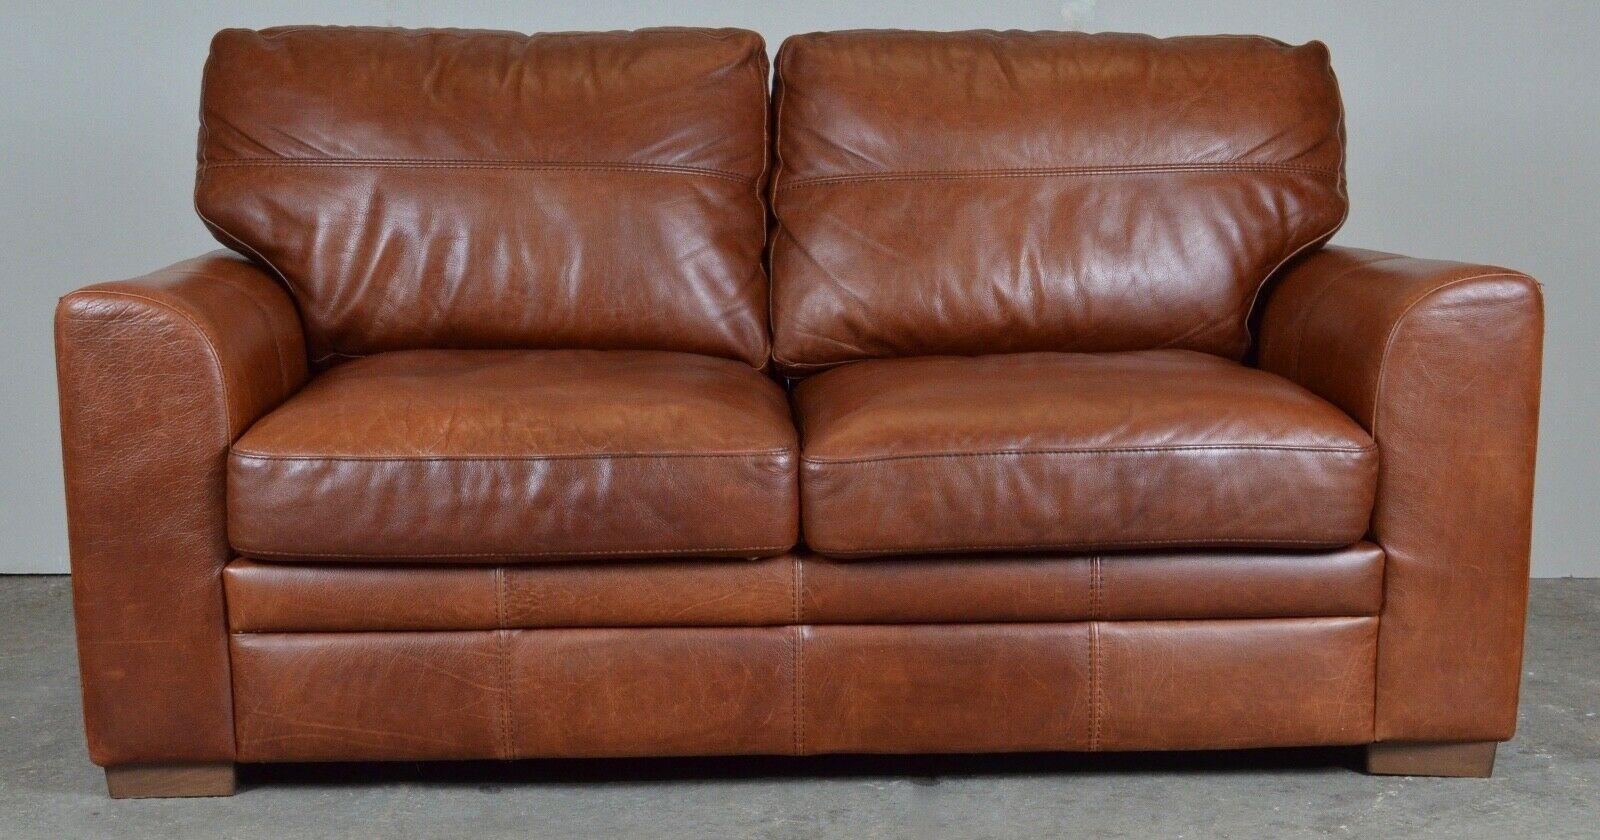 Mid-Century Modern Luxury 2 Seater Viva Italian Designer Tan Leather Sofa / Armchair Available